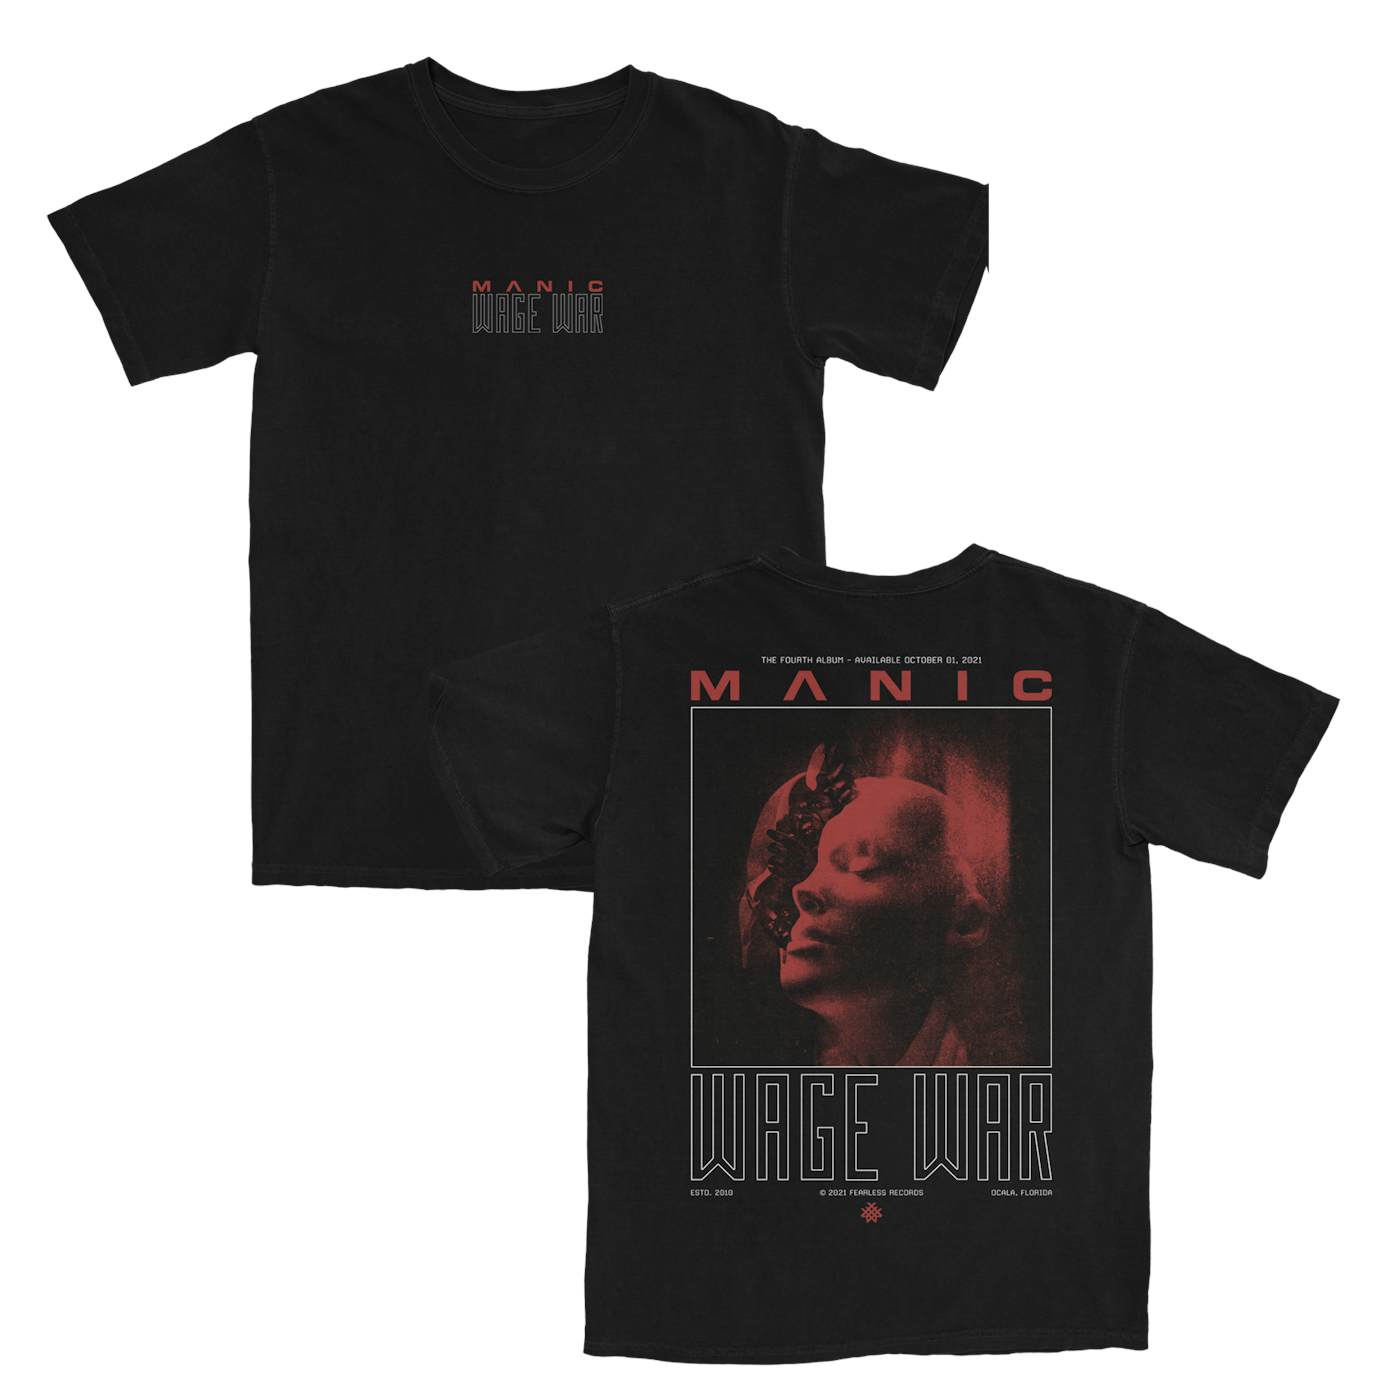 Wage War "Manic Face" T-Shirt